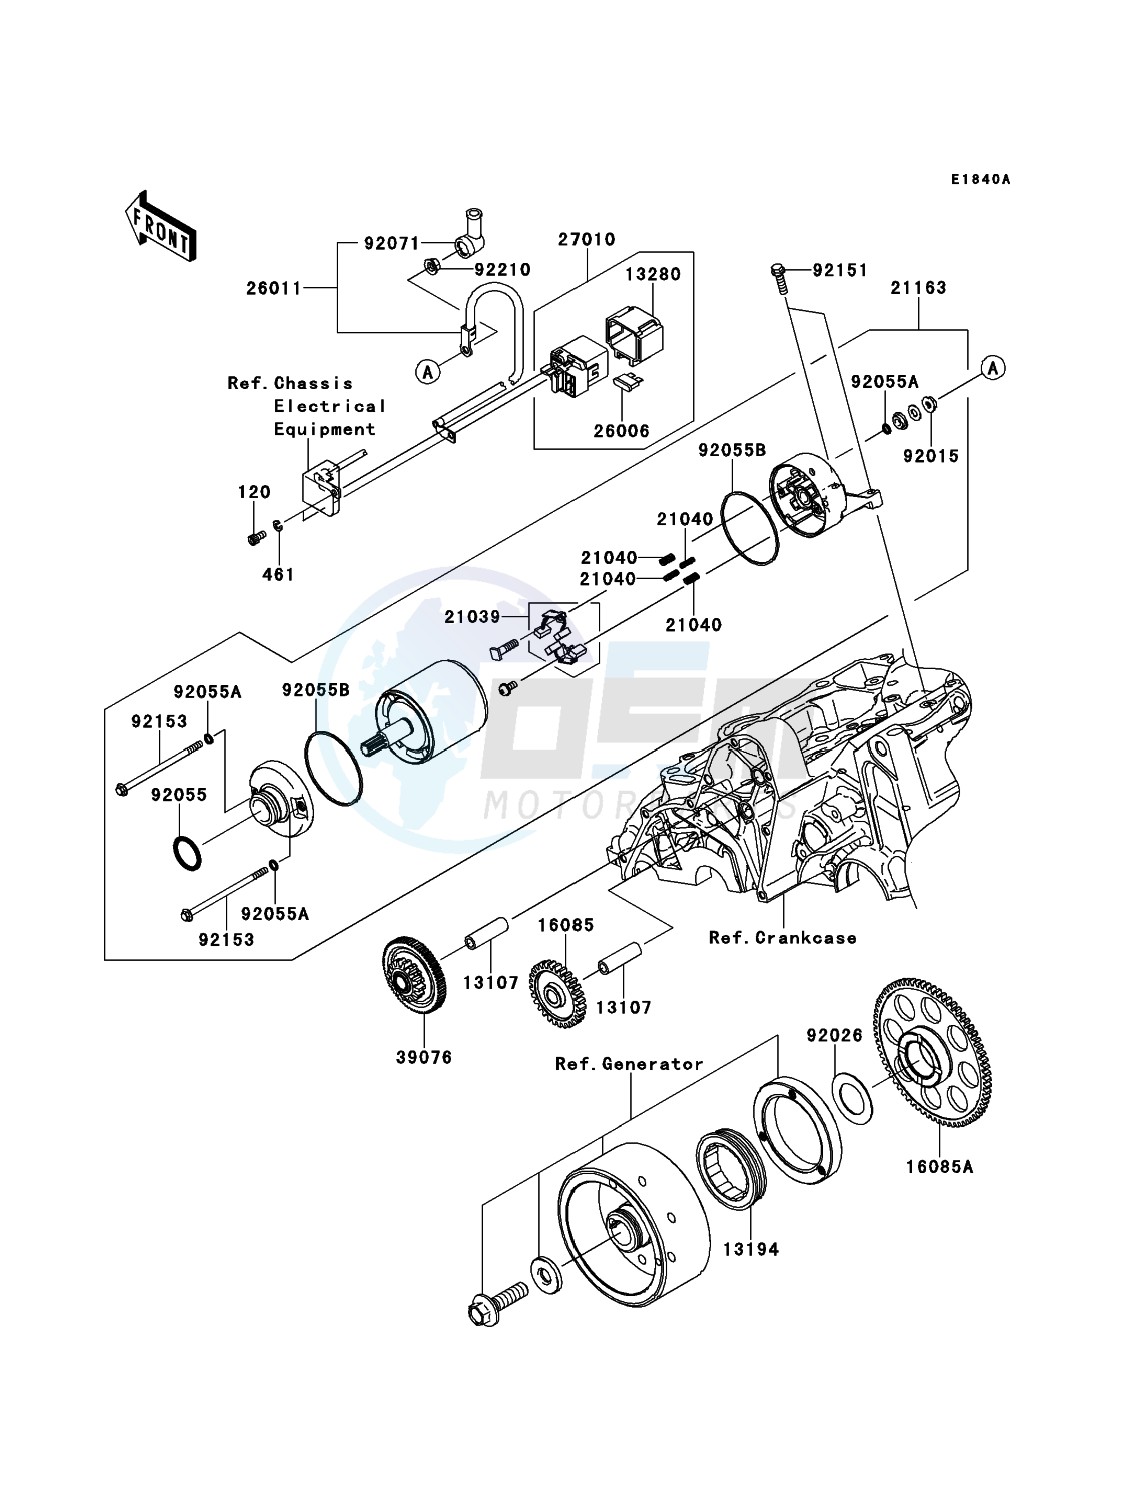 Starter Motor(ER650AE046805-) blueprint